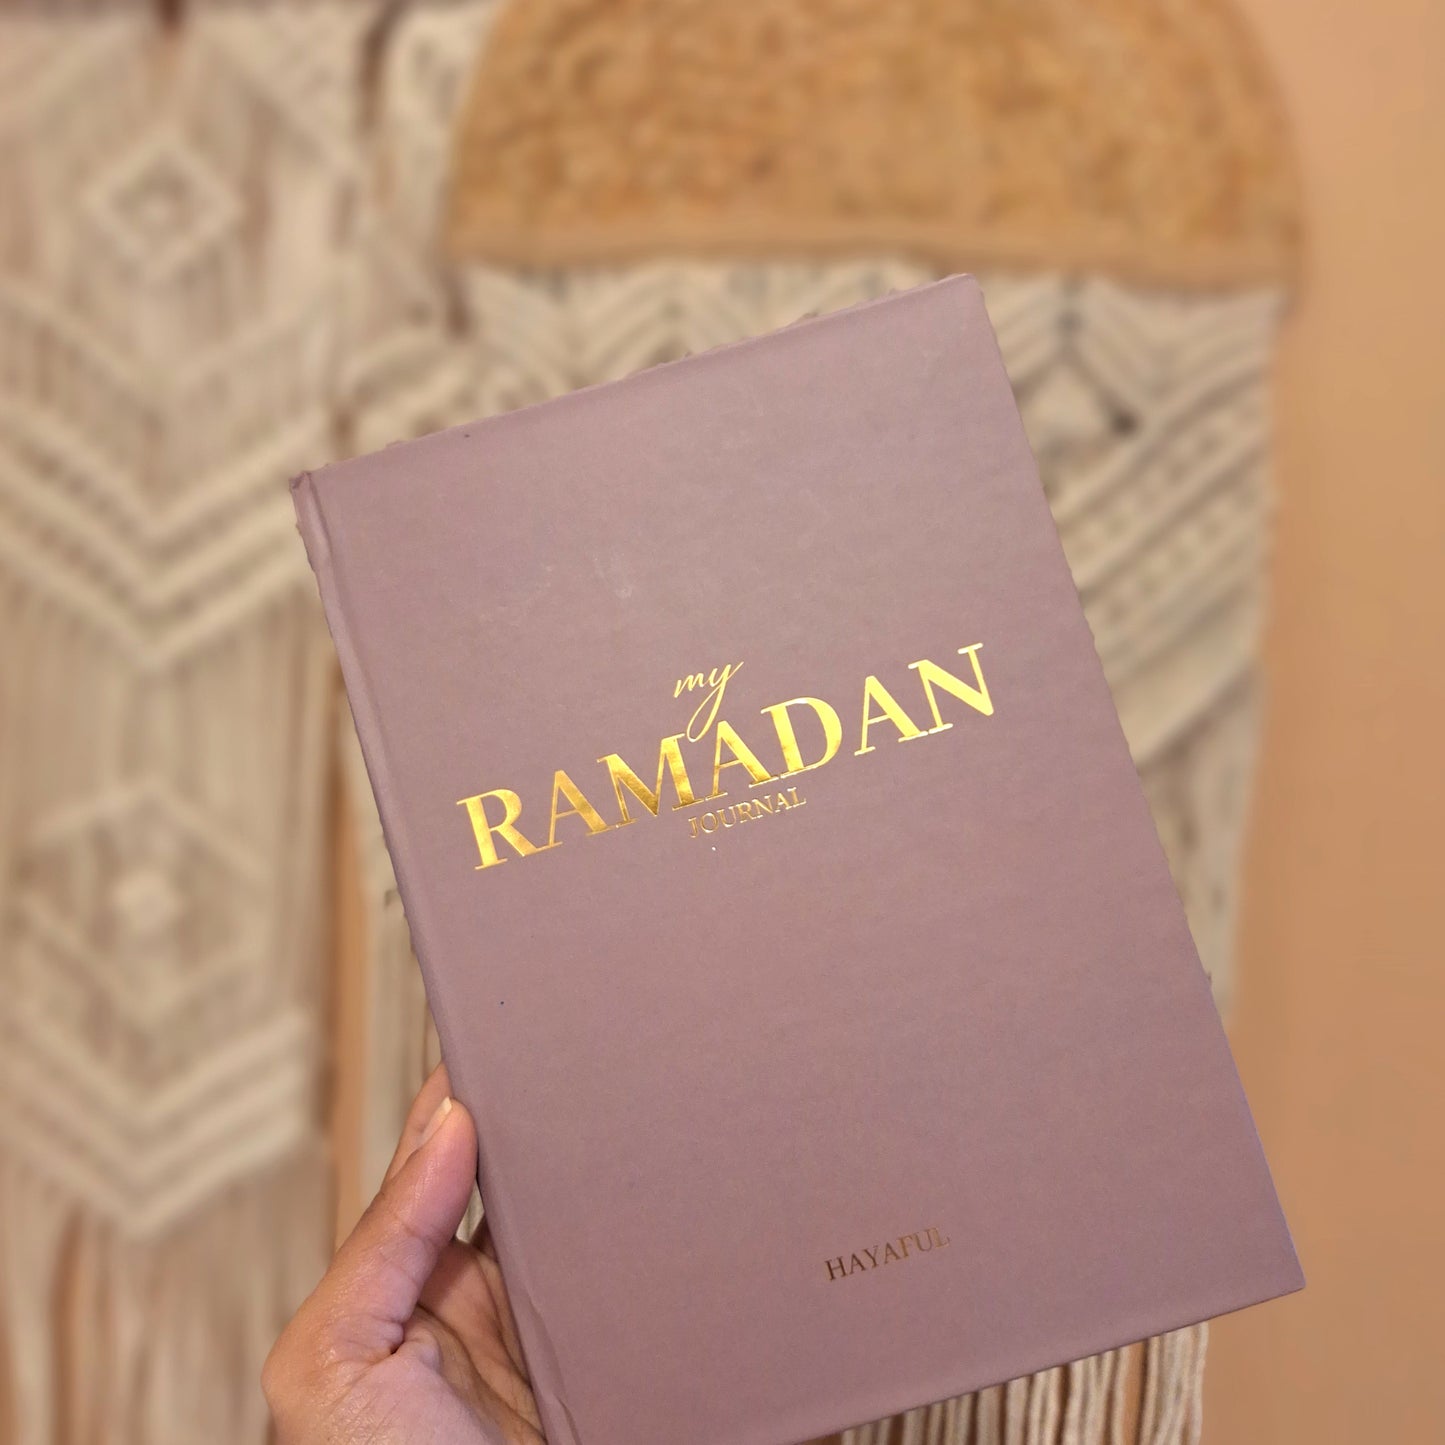 Hayaful Ramadan Planner